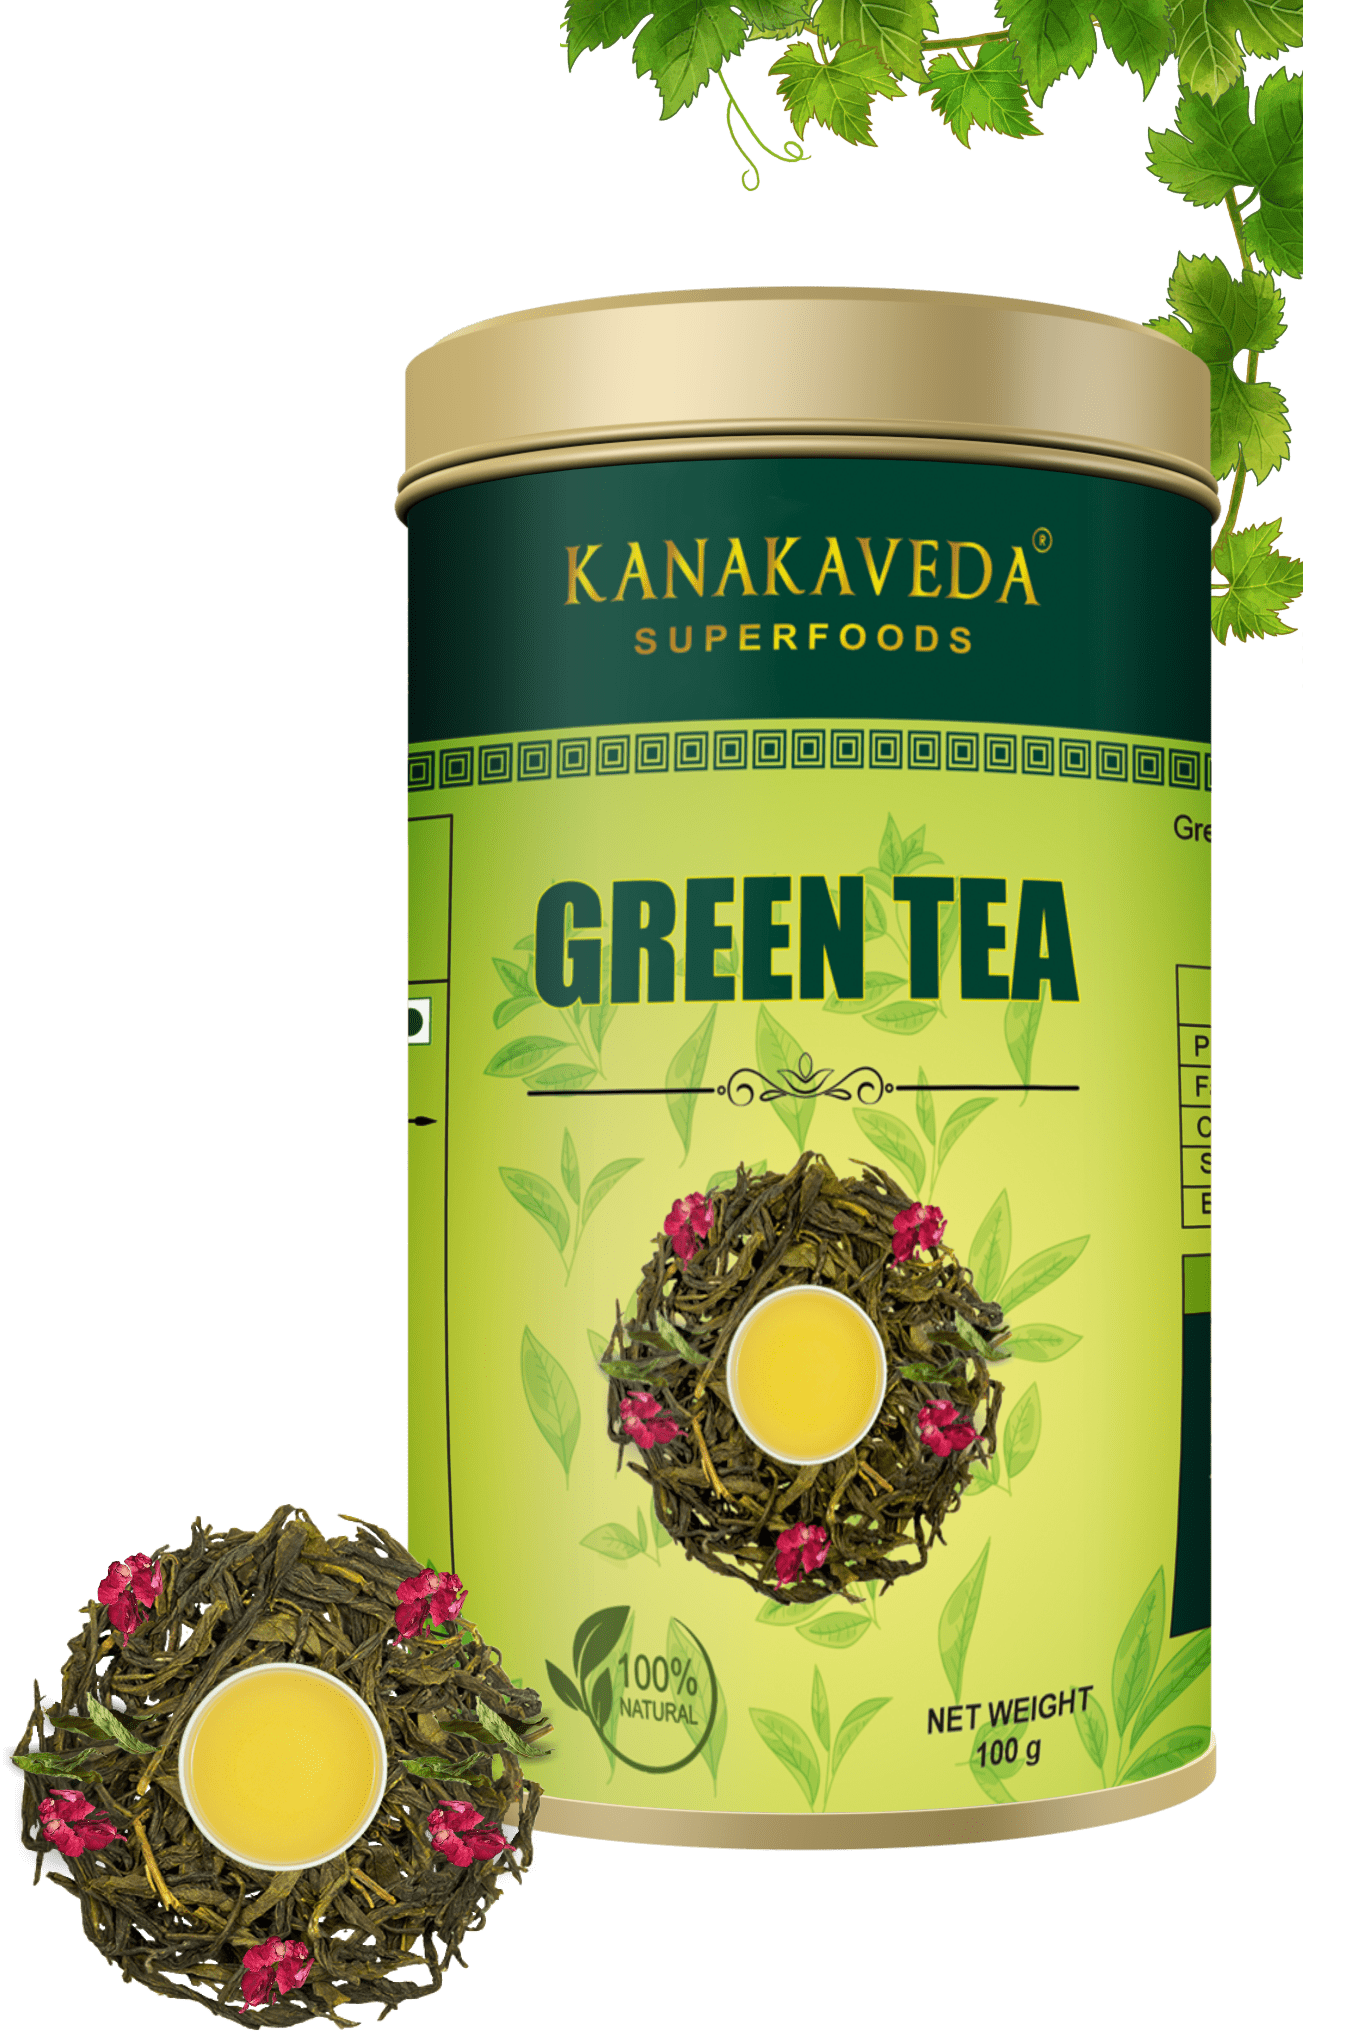 GREEN TEA - KANAKAVEDA